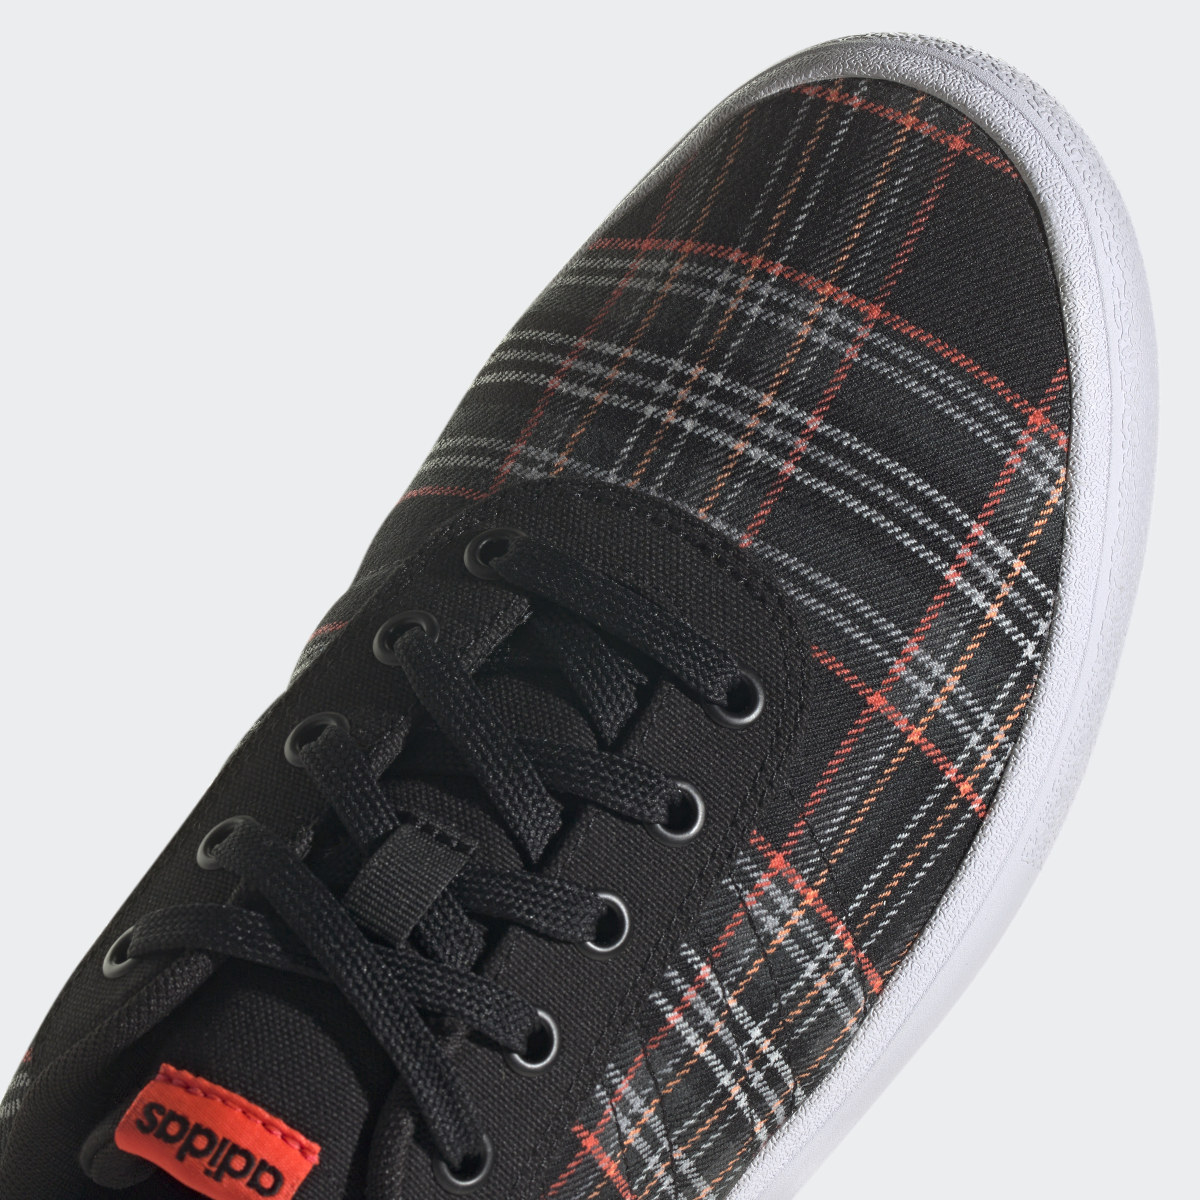 Adidas Sapatilhas de Lifestyle e Skateboarding 3-Stripes Vulc Raid3r. 10